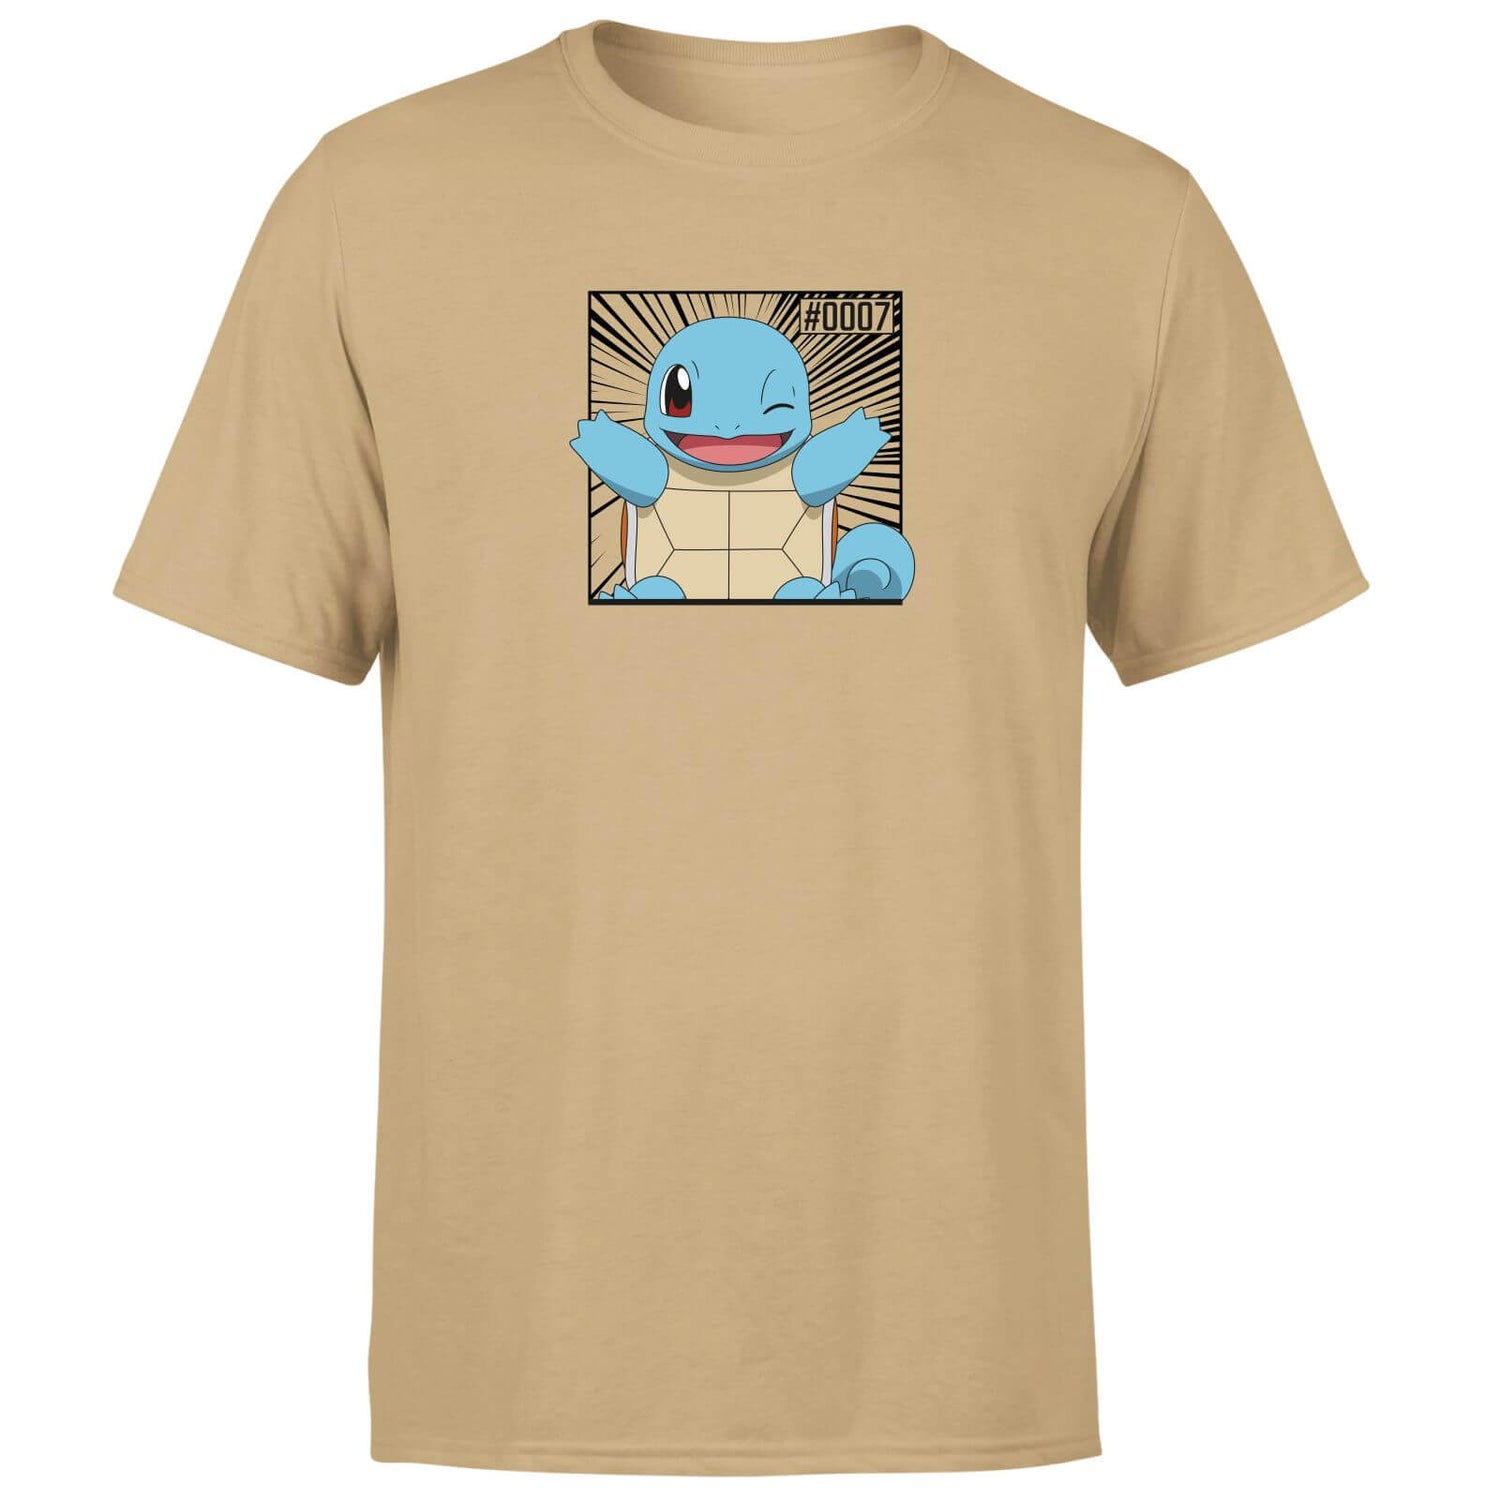 Pokémon Pokédex Squirtle #0007 Men's T-Shirt - Tan